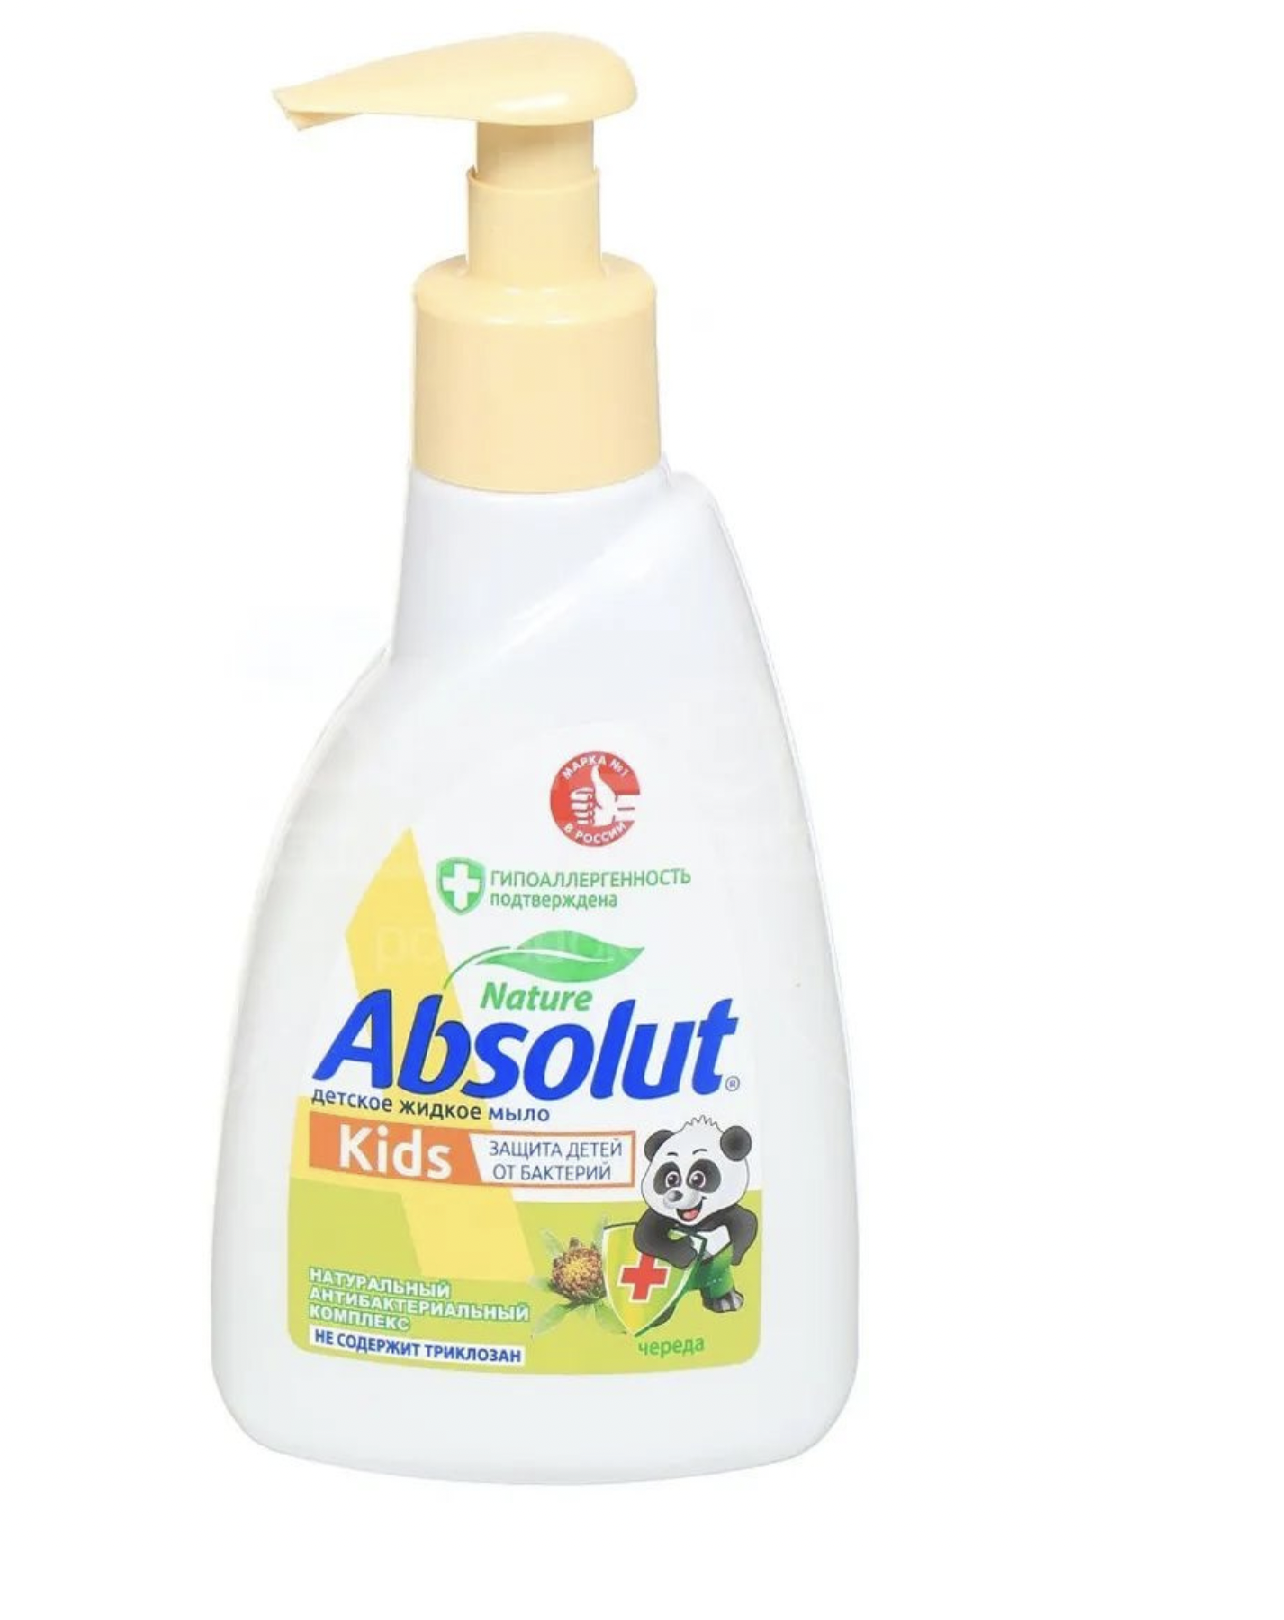 Мыло жидкое Absolut Kids Череда Антибактериальное 250 мл 6 штук мыло жидкое absolut 2в1 нежное антибактериальное 250 мл 6 штук